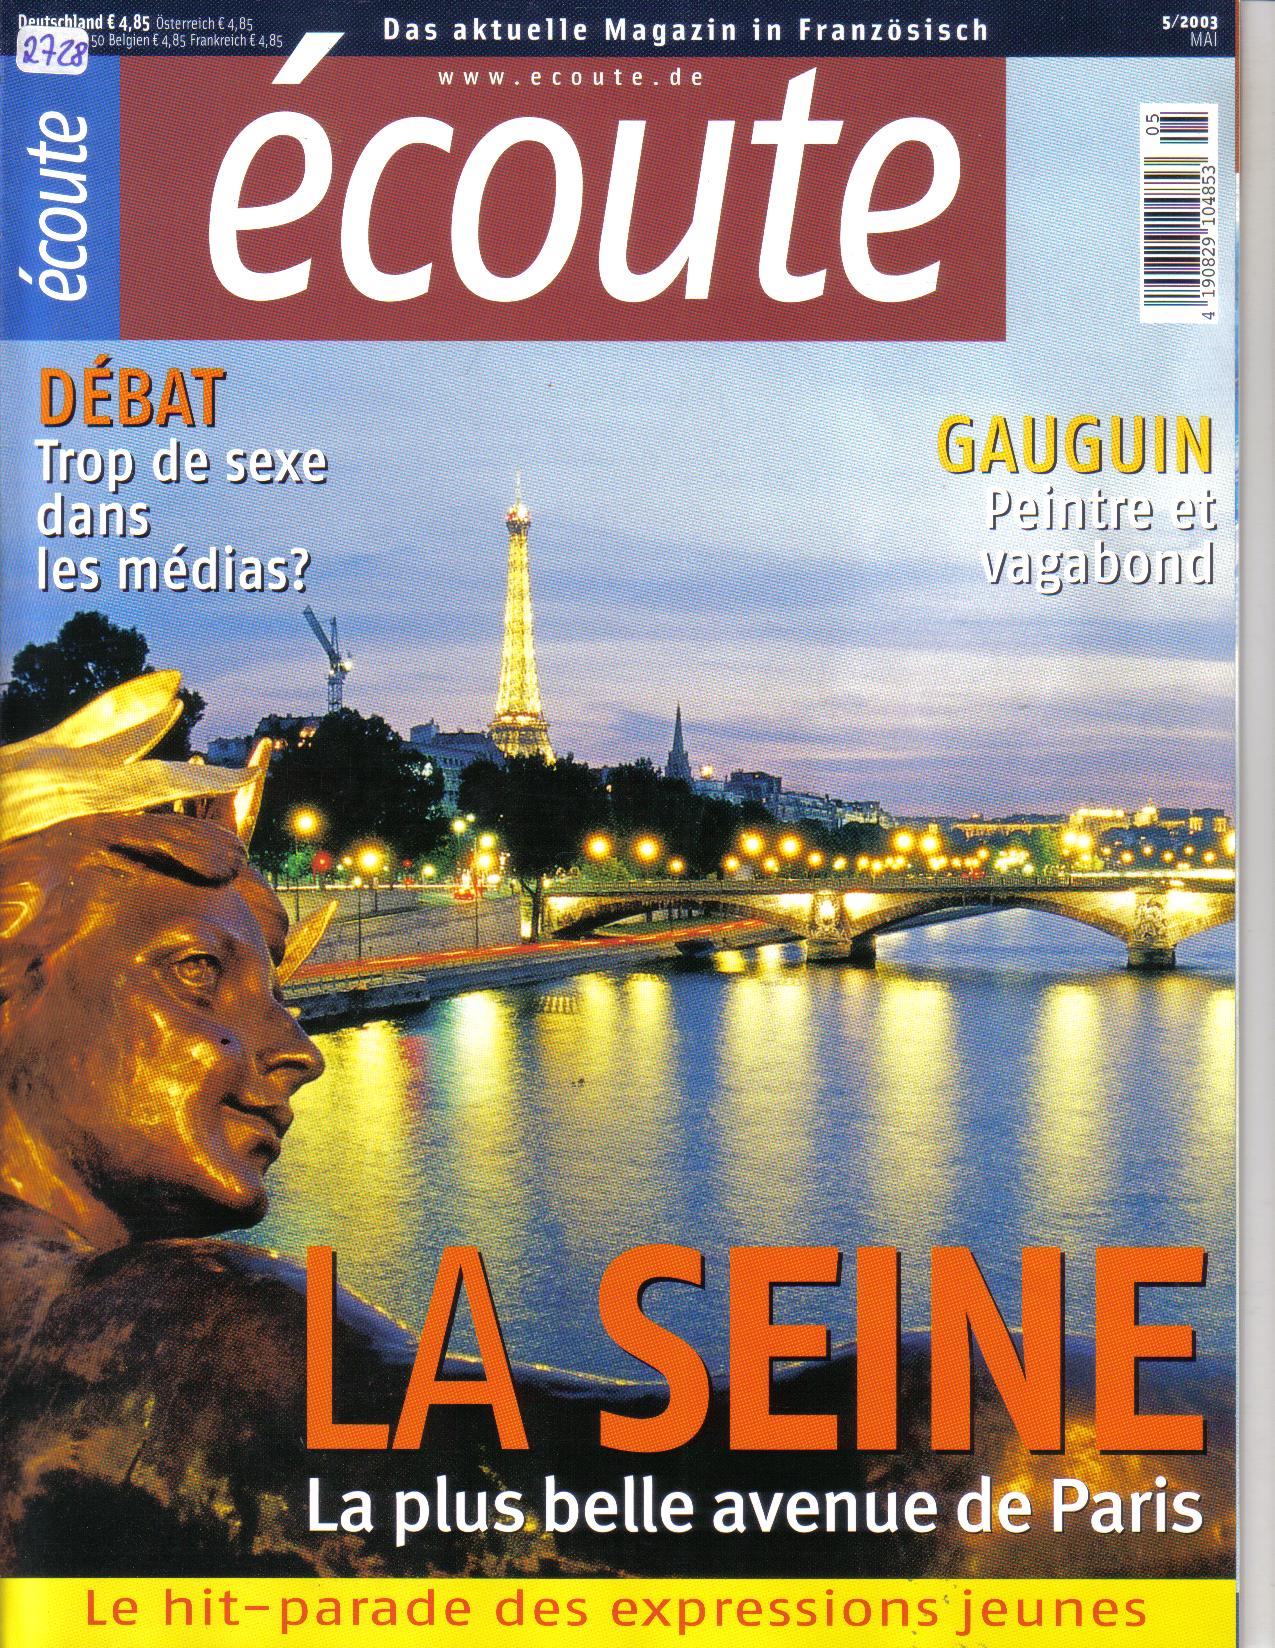 Ã¨coute Das aktuelle Magazin in Franzoesisch  5/2003La Seine